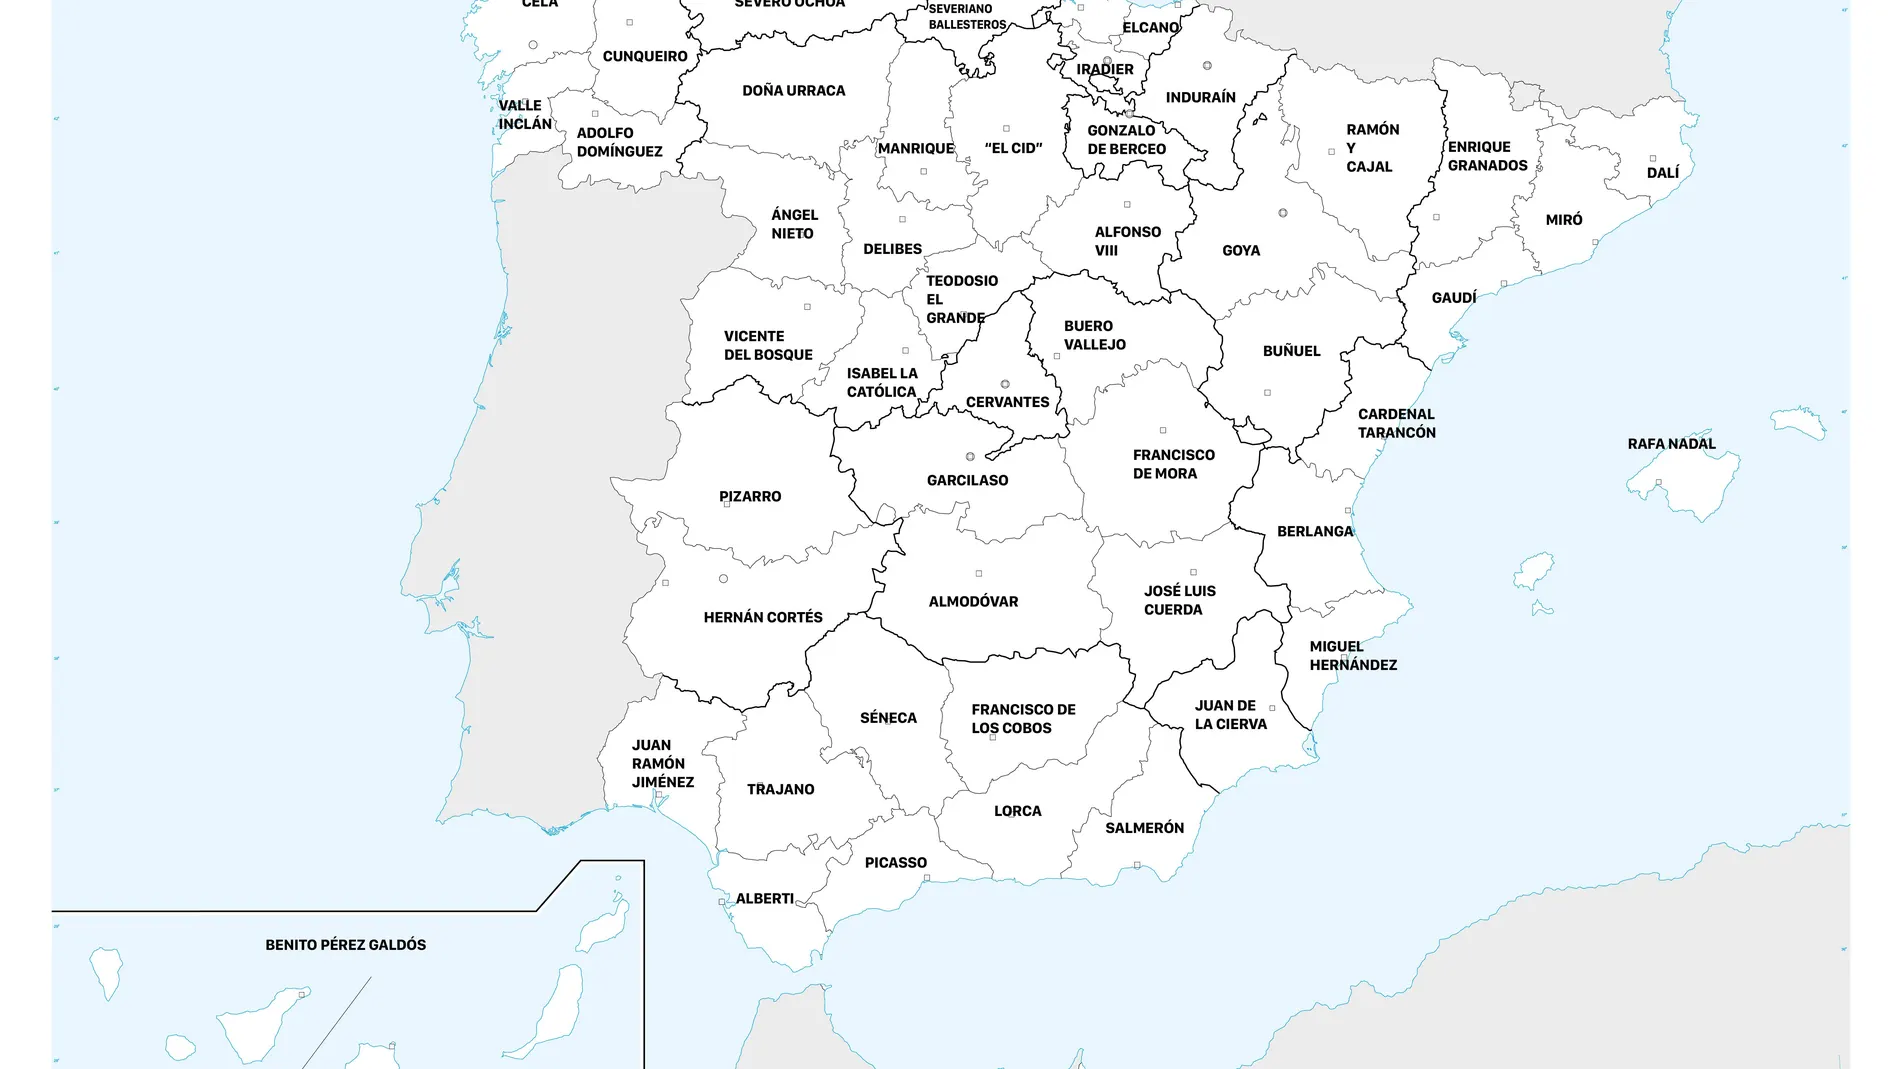 Mapa de los personajes más importantes de cada provincia.